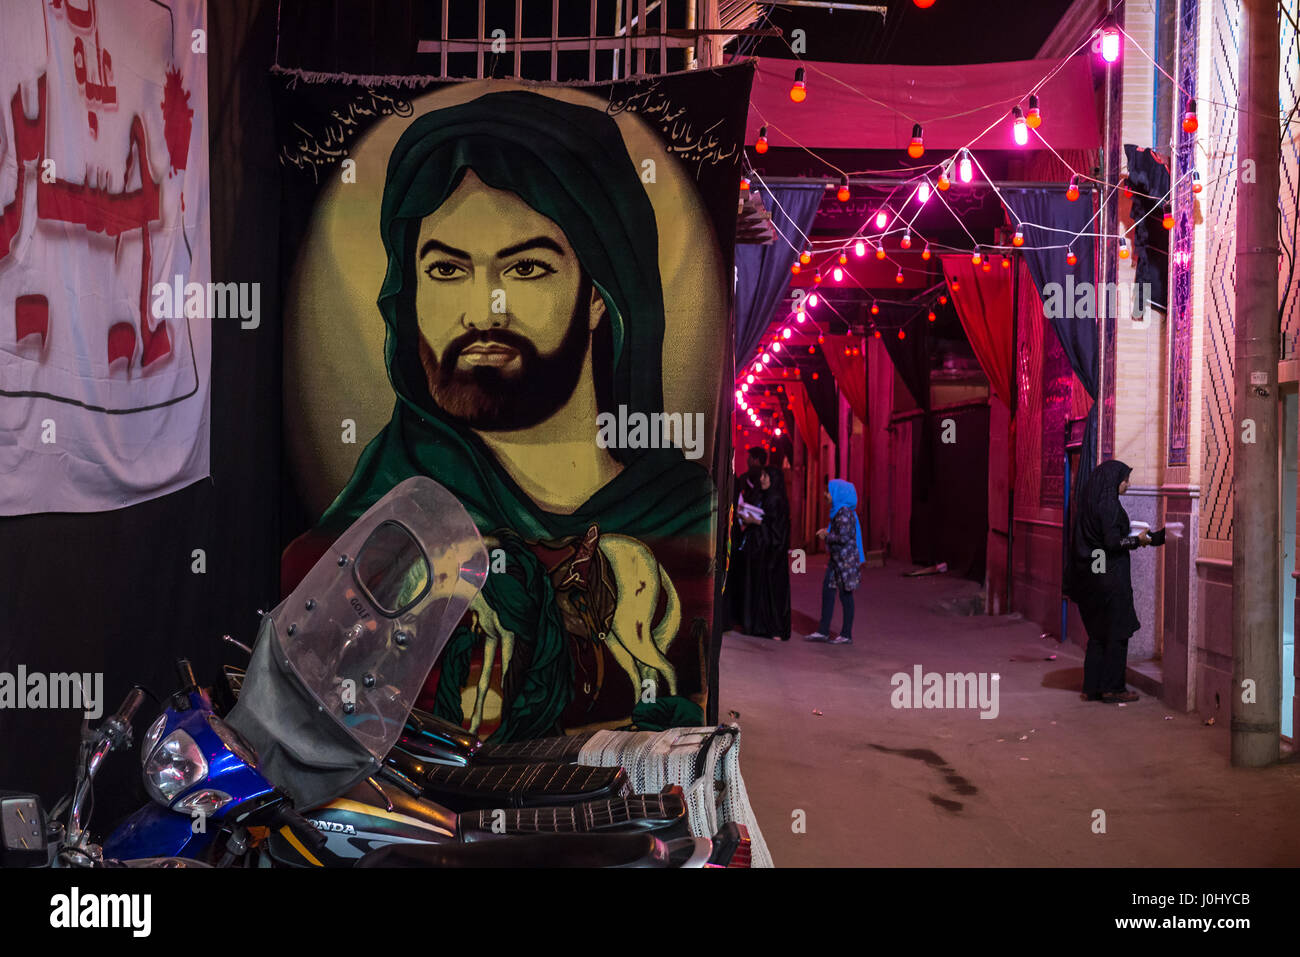 Portrait de l'Imam Hussein ibn Ali pendant mois Muharram dans une rue de la vieille ville à Kashan, ville capitale du comté d'Iran Kashan Banque D'Images